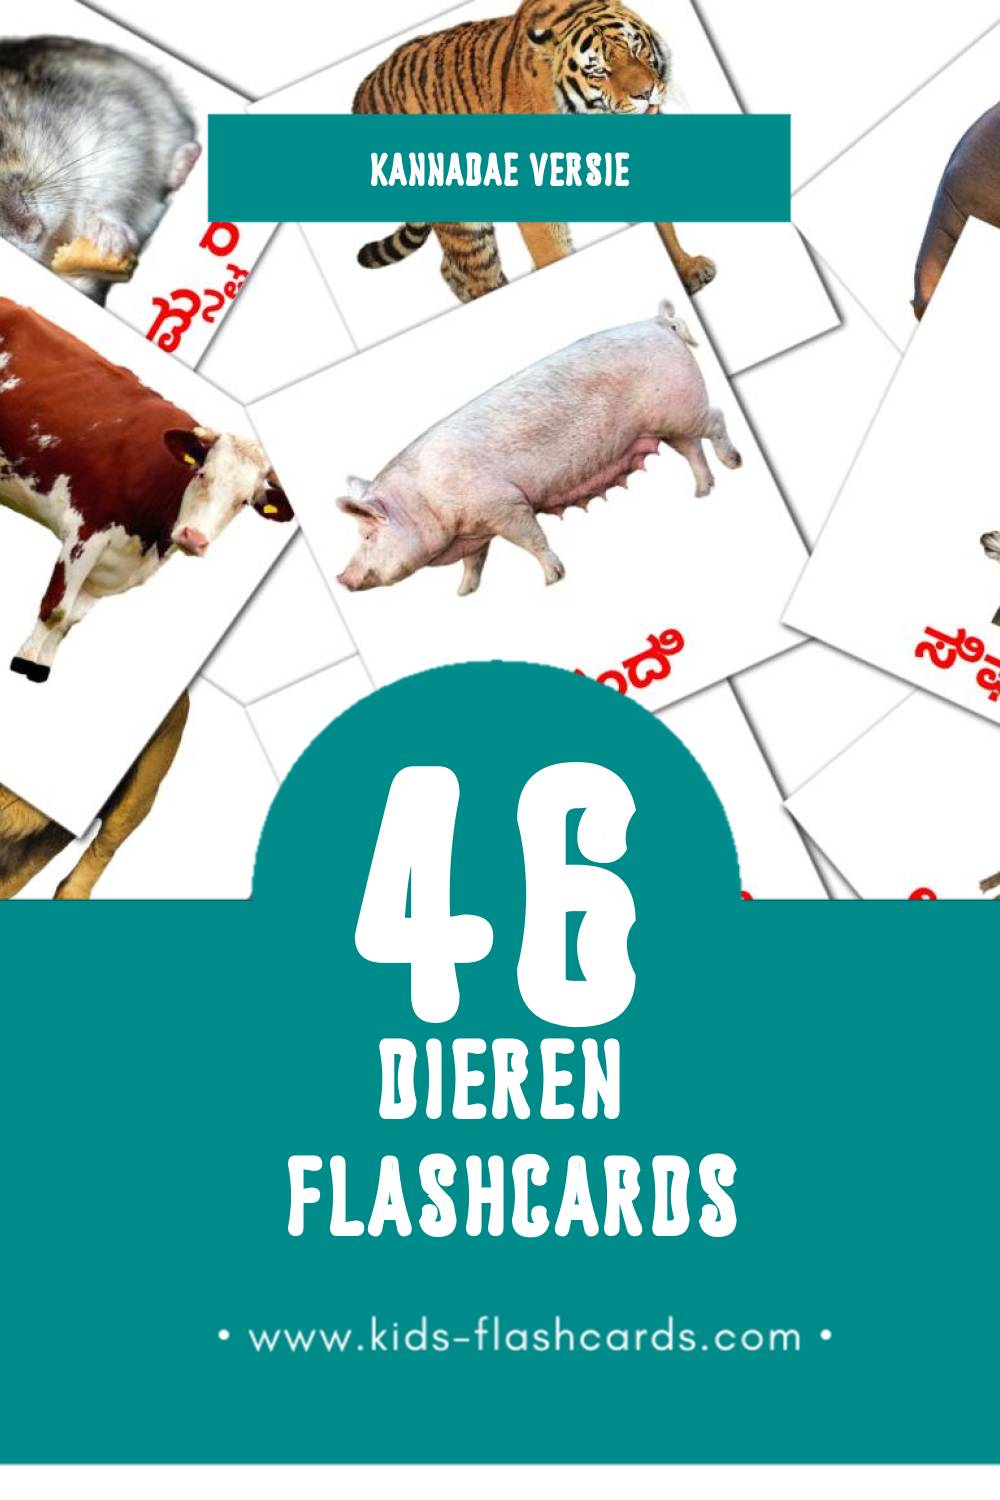 Visuele ಪ್ರಾಣಿಗಳು Flashcards voor Kleuters (46 kaarten in het Kannada)